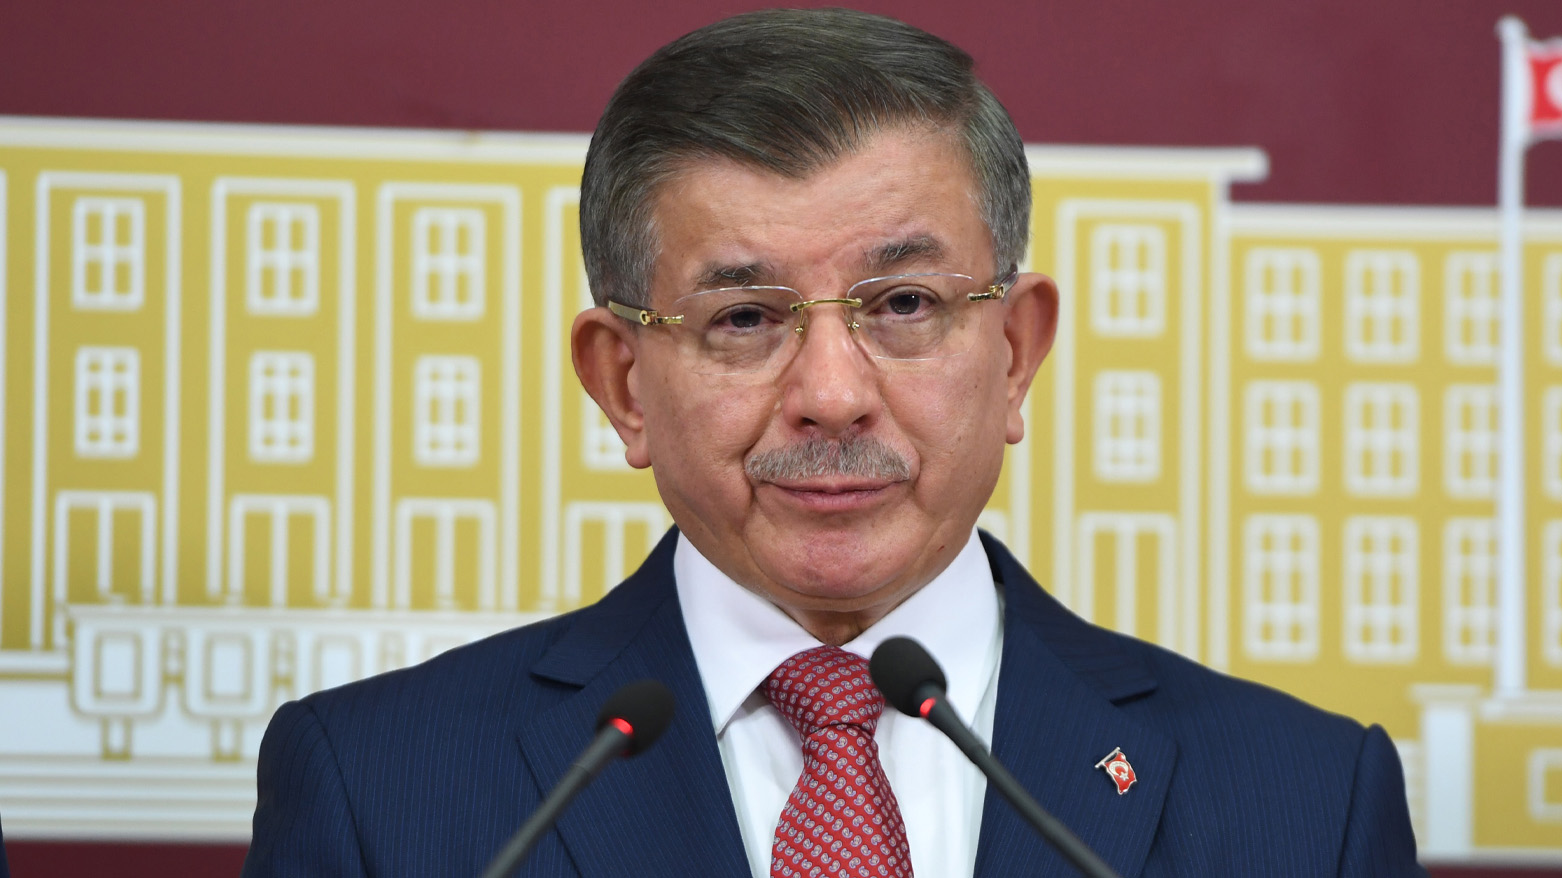 Ahmet Davutoğlu